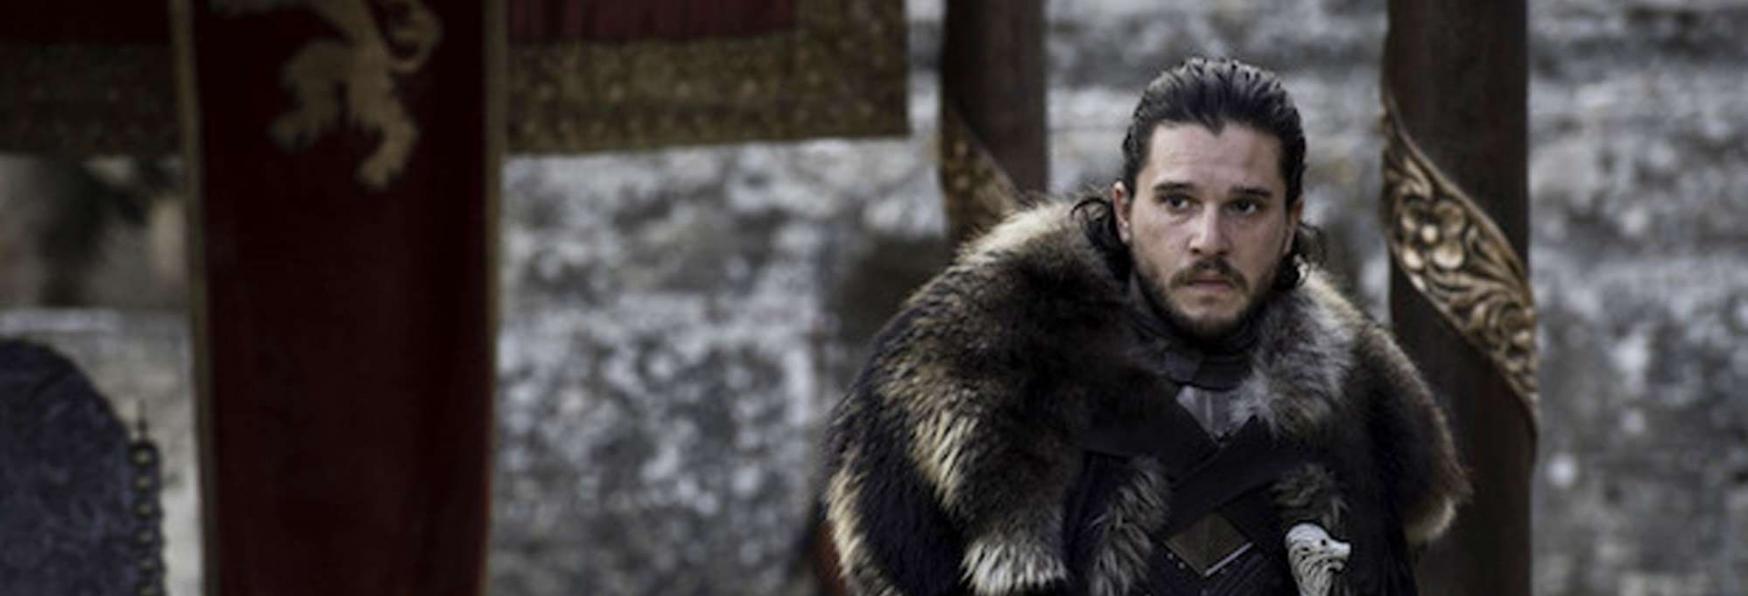 Il Trono di Spade: HBO condivide un Video su Jon Snow. Presto l'annuncio della Serie TV Spin-off?